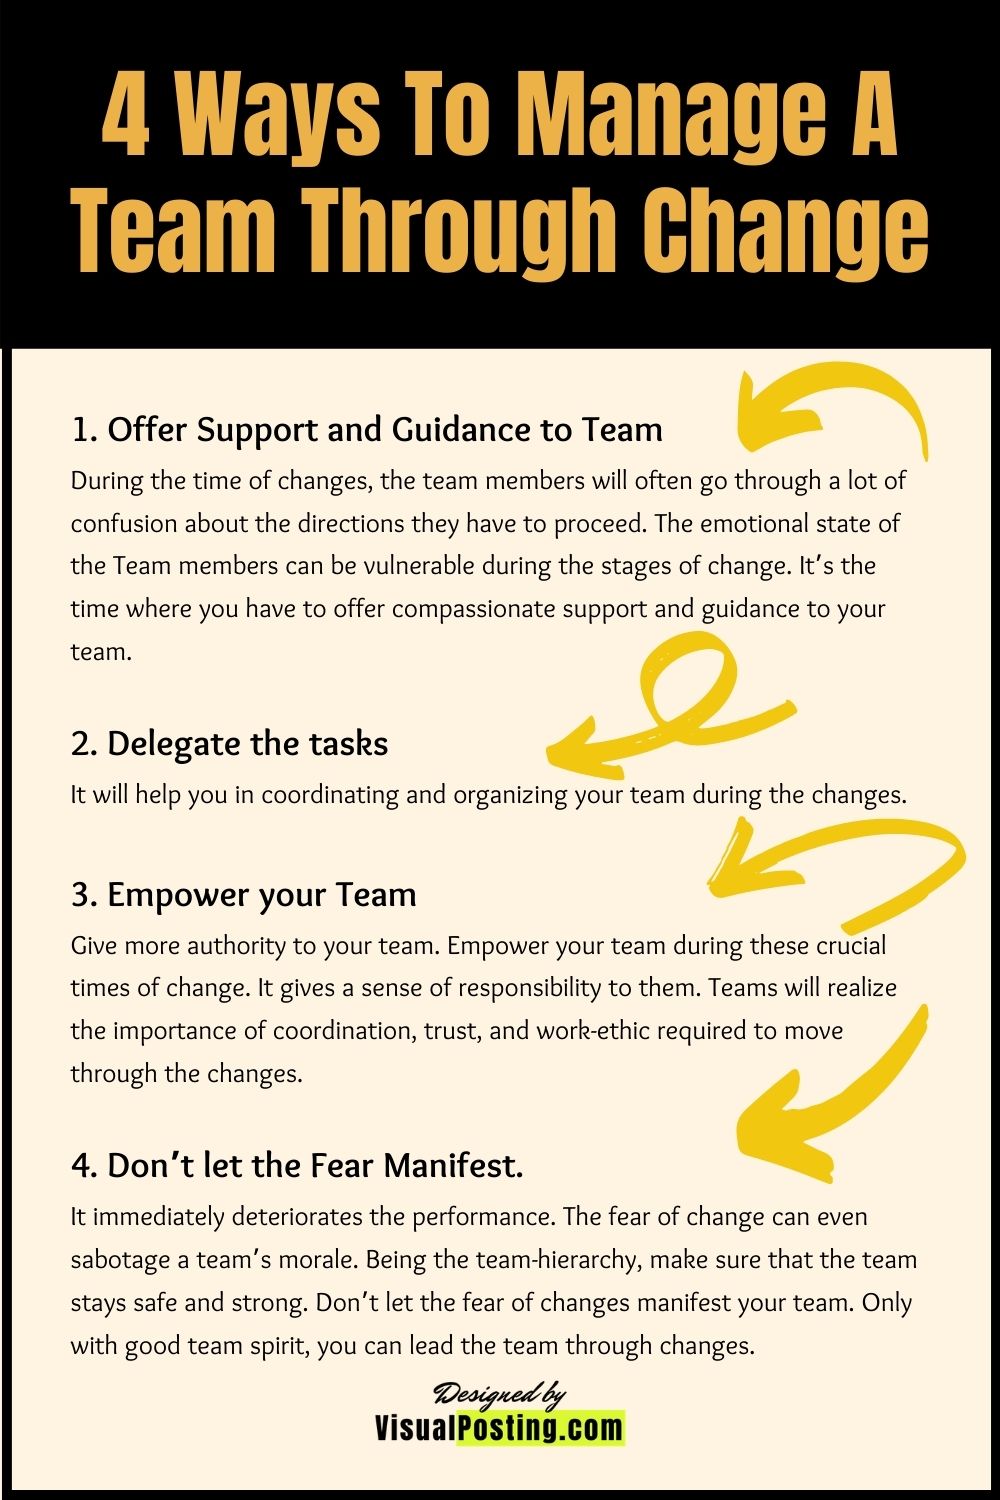 4 Ways To Manage A Team Through Change.jpg